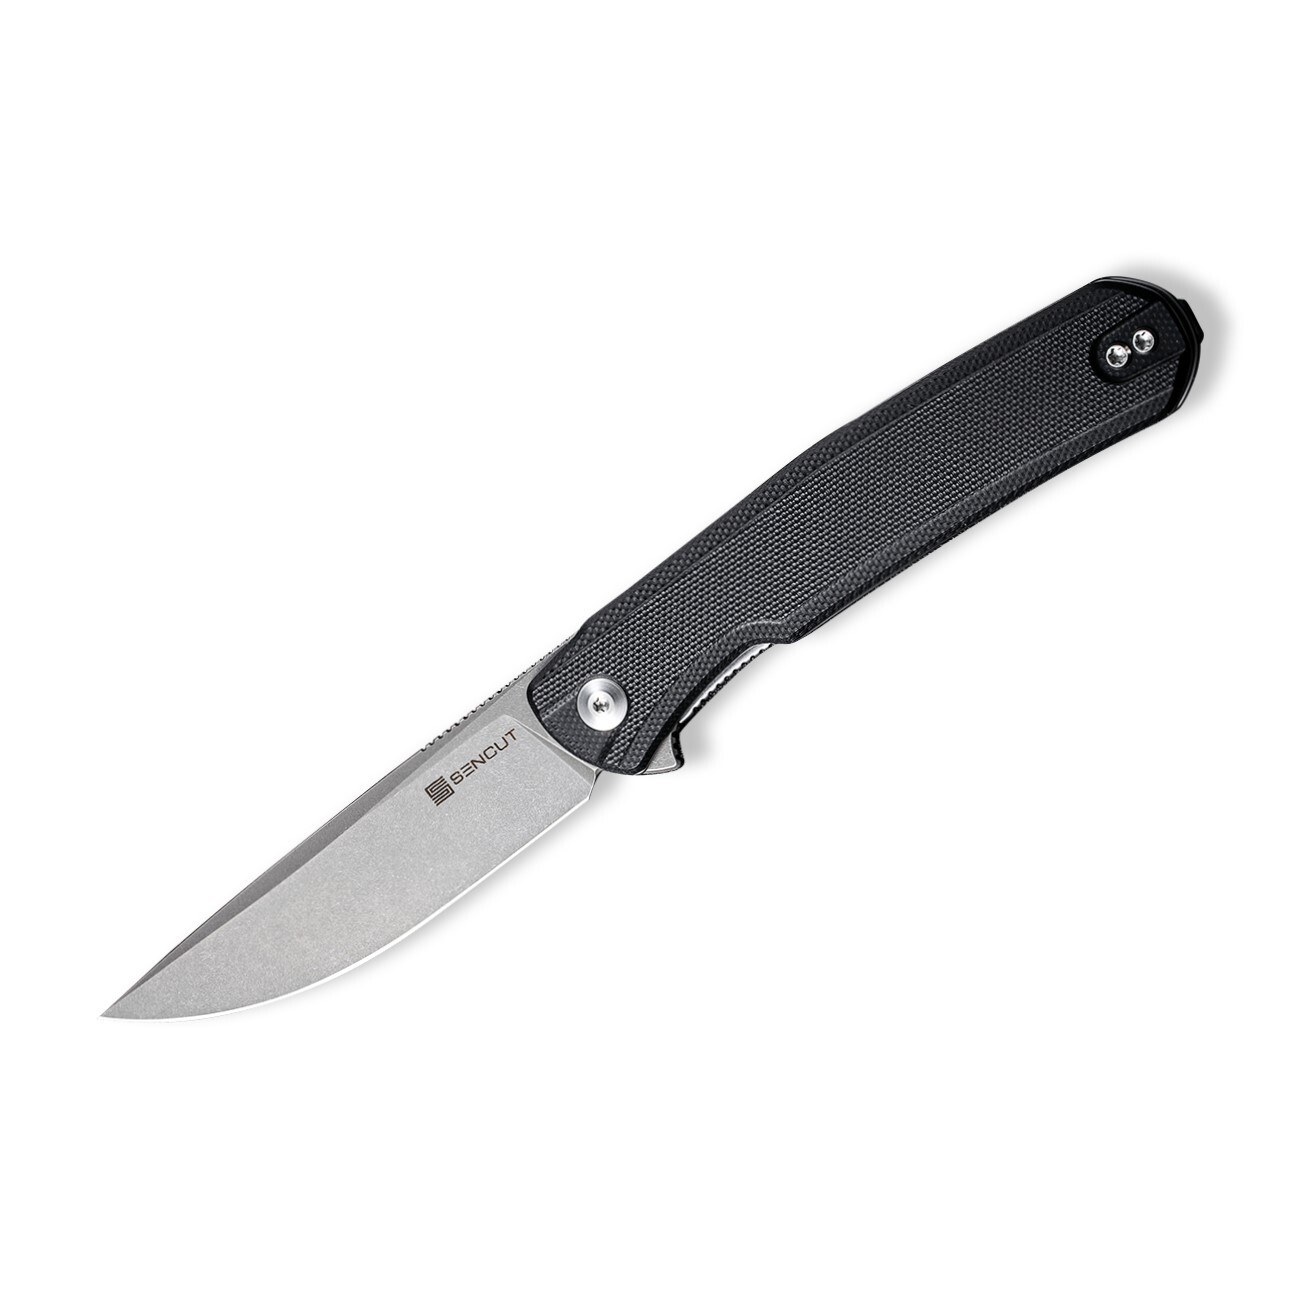 Складной нож Sencut Scitus, сталь D2, рукоять G10, gray/black, Бренды